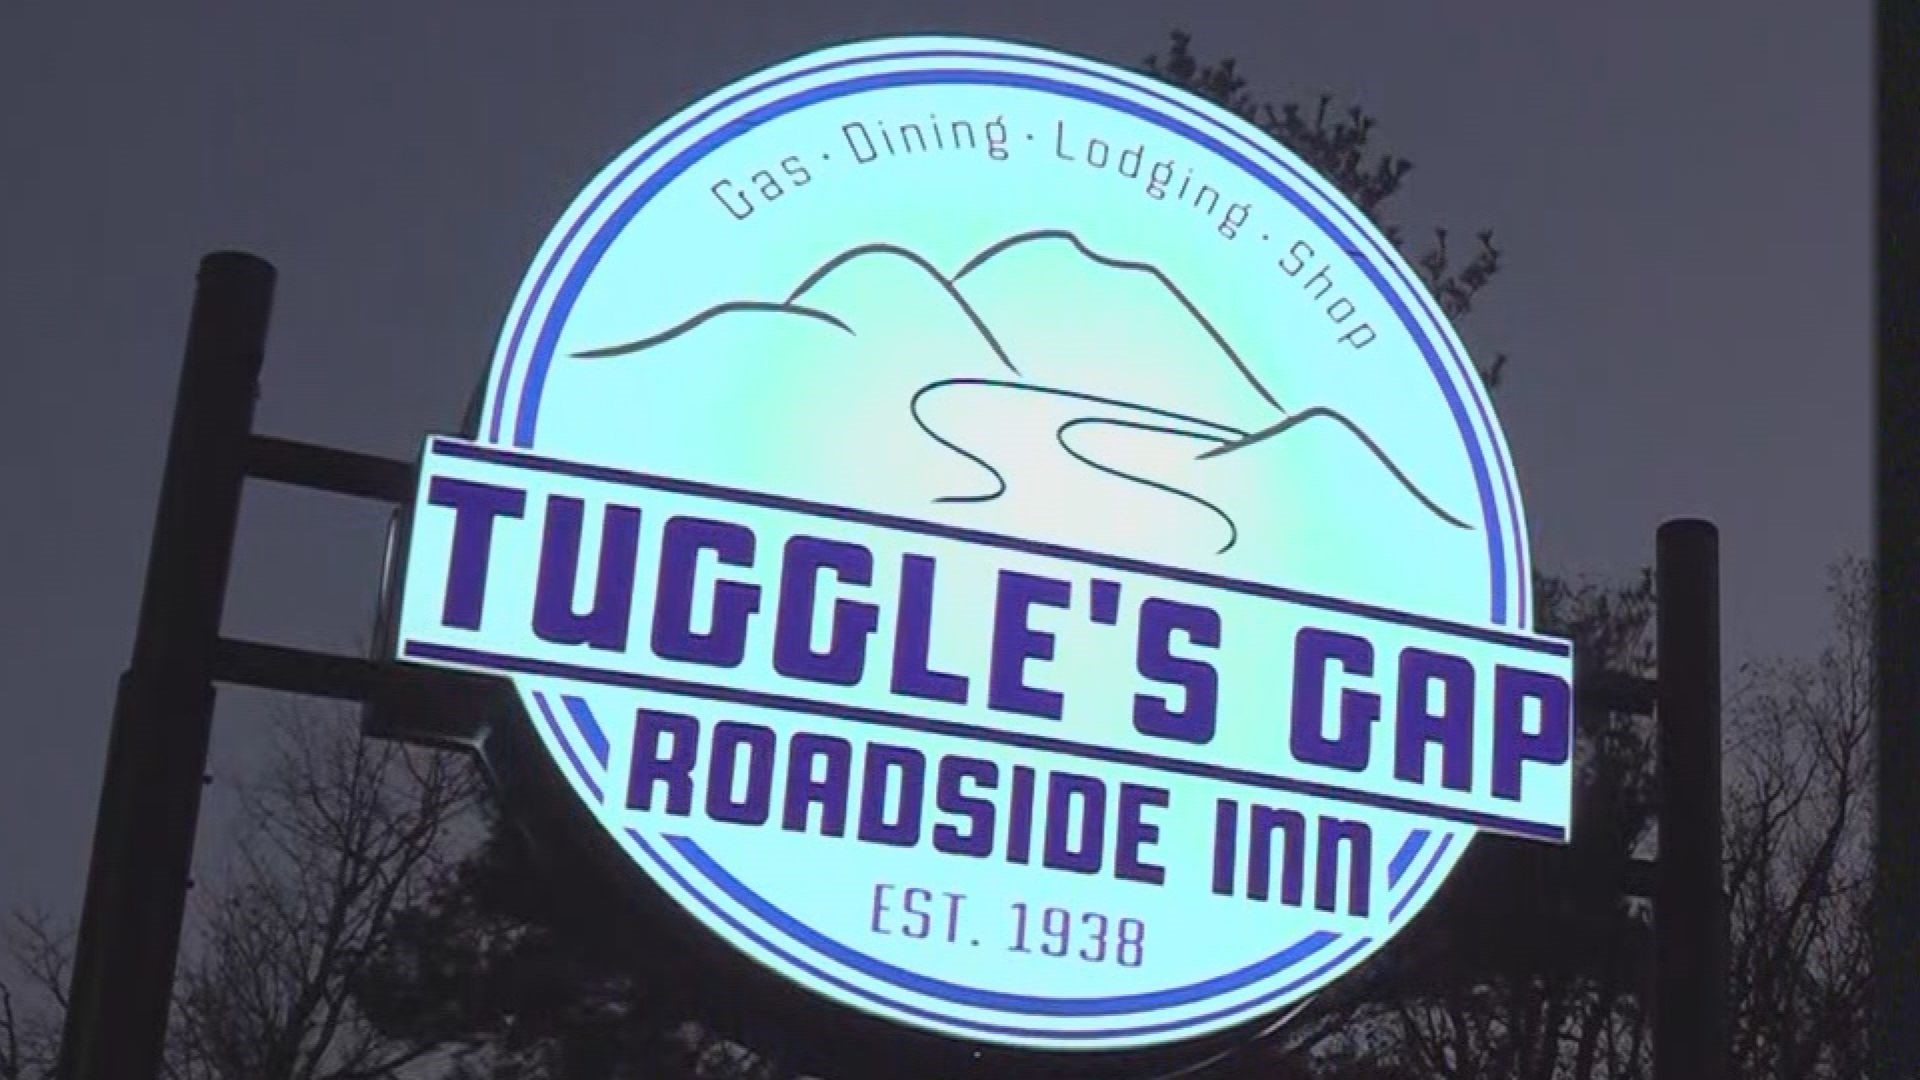 Tuggles Gap Roadside Inn has taken in firefighters from all over.